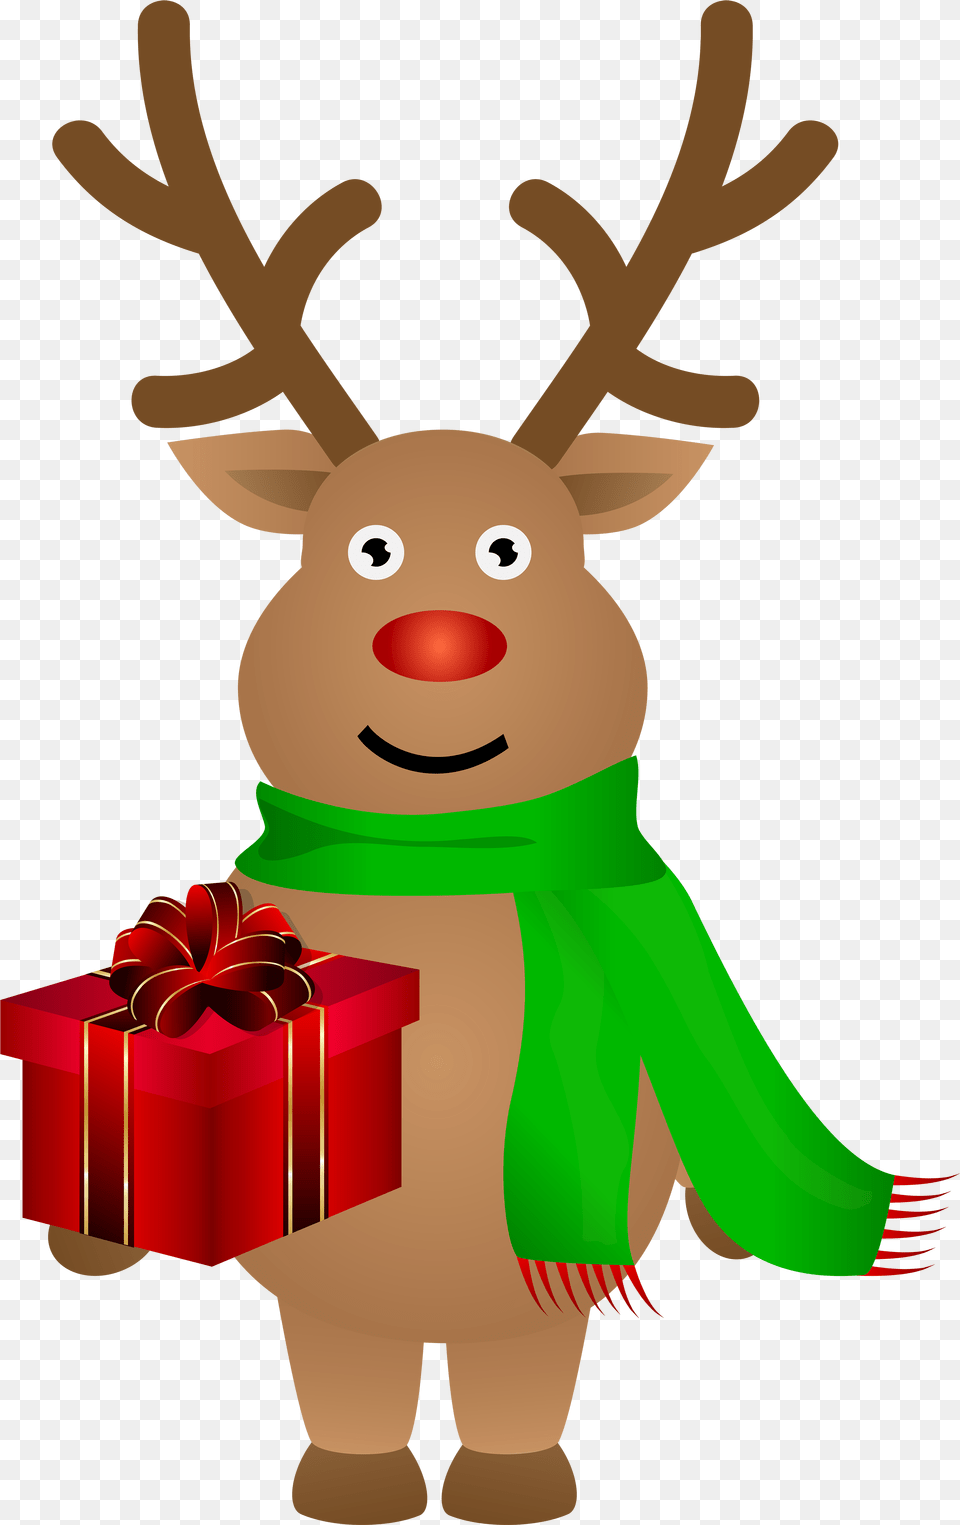 Reindeer Christmas Reindeer Clipart, Animal, Deer, Mammal, Wildlife Free Transparent Png